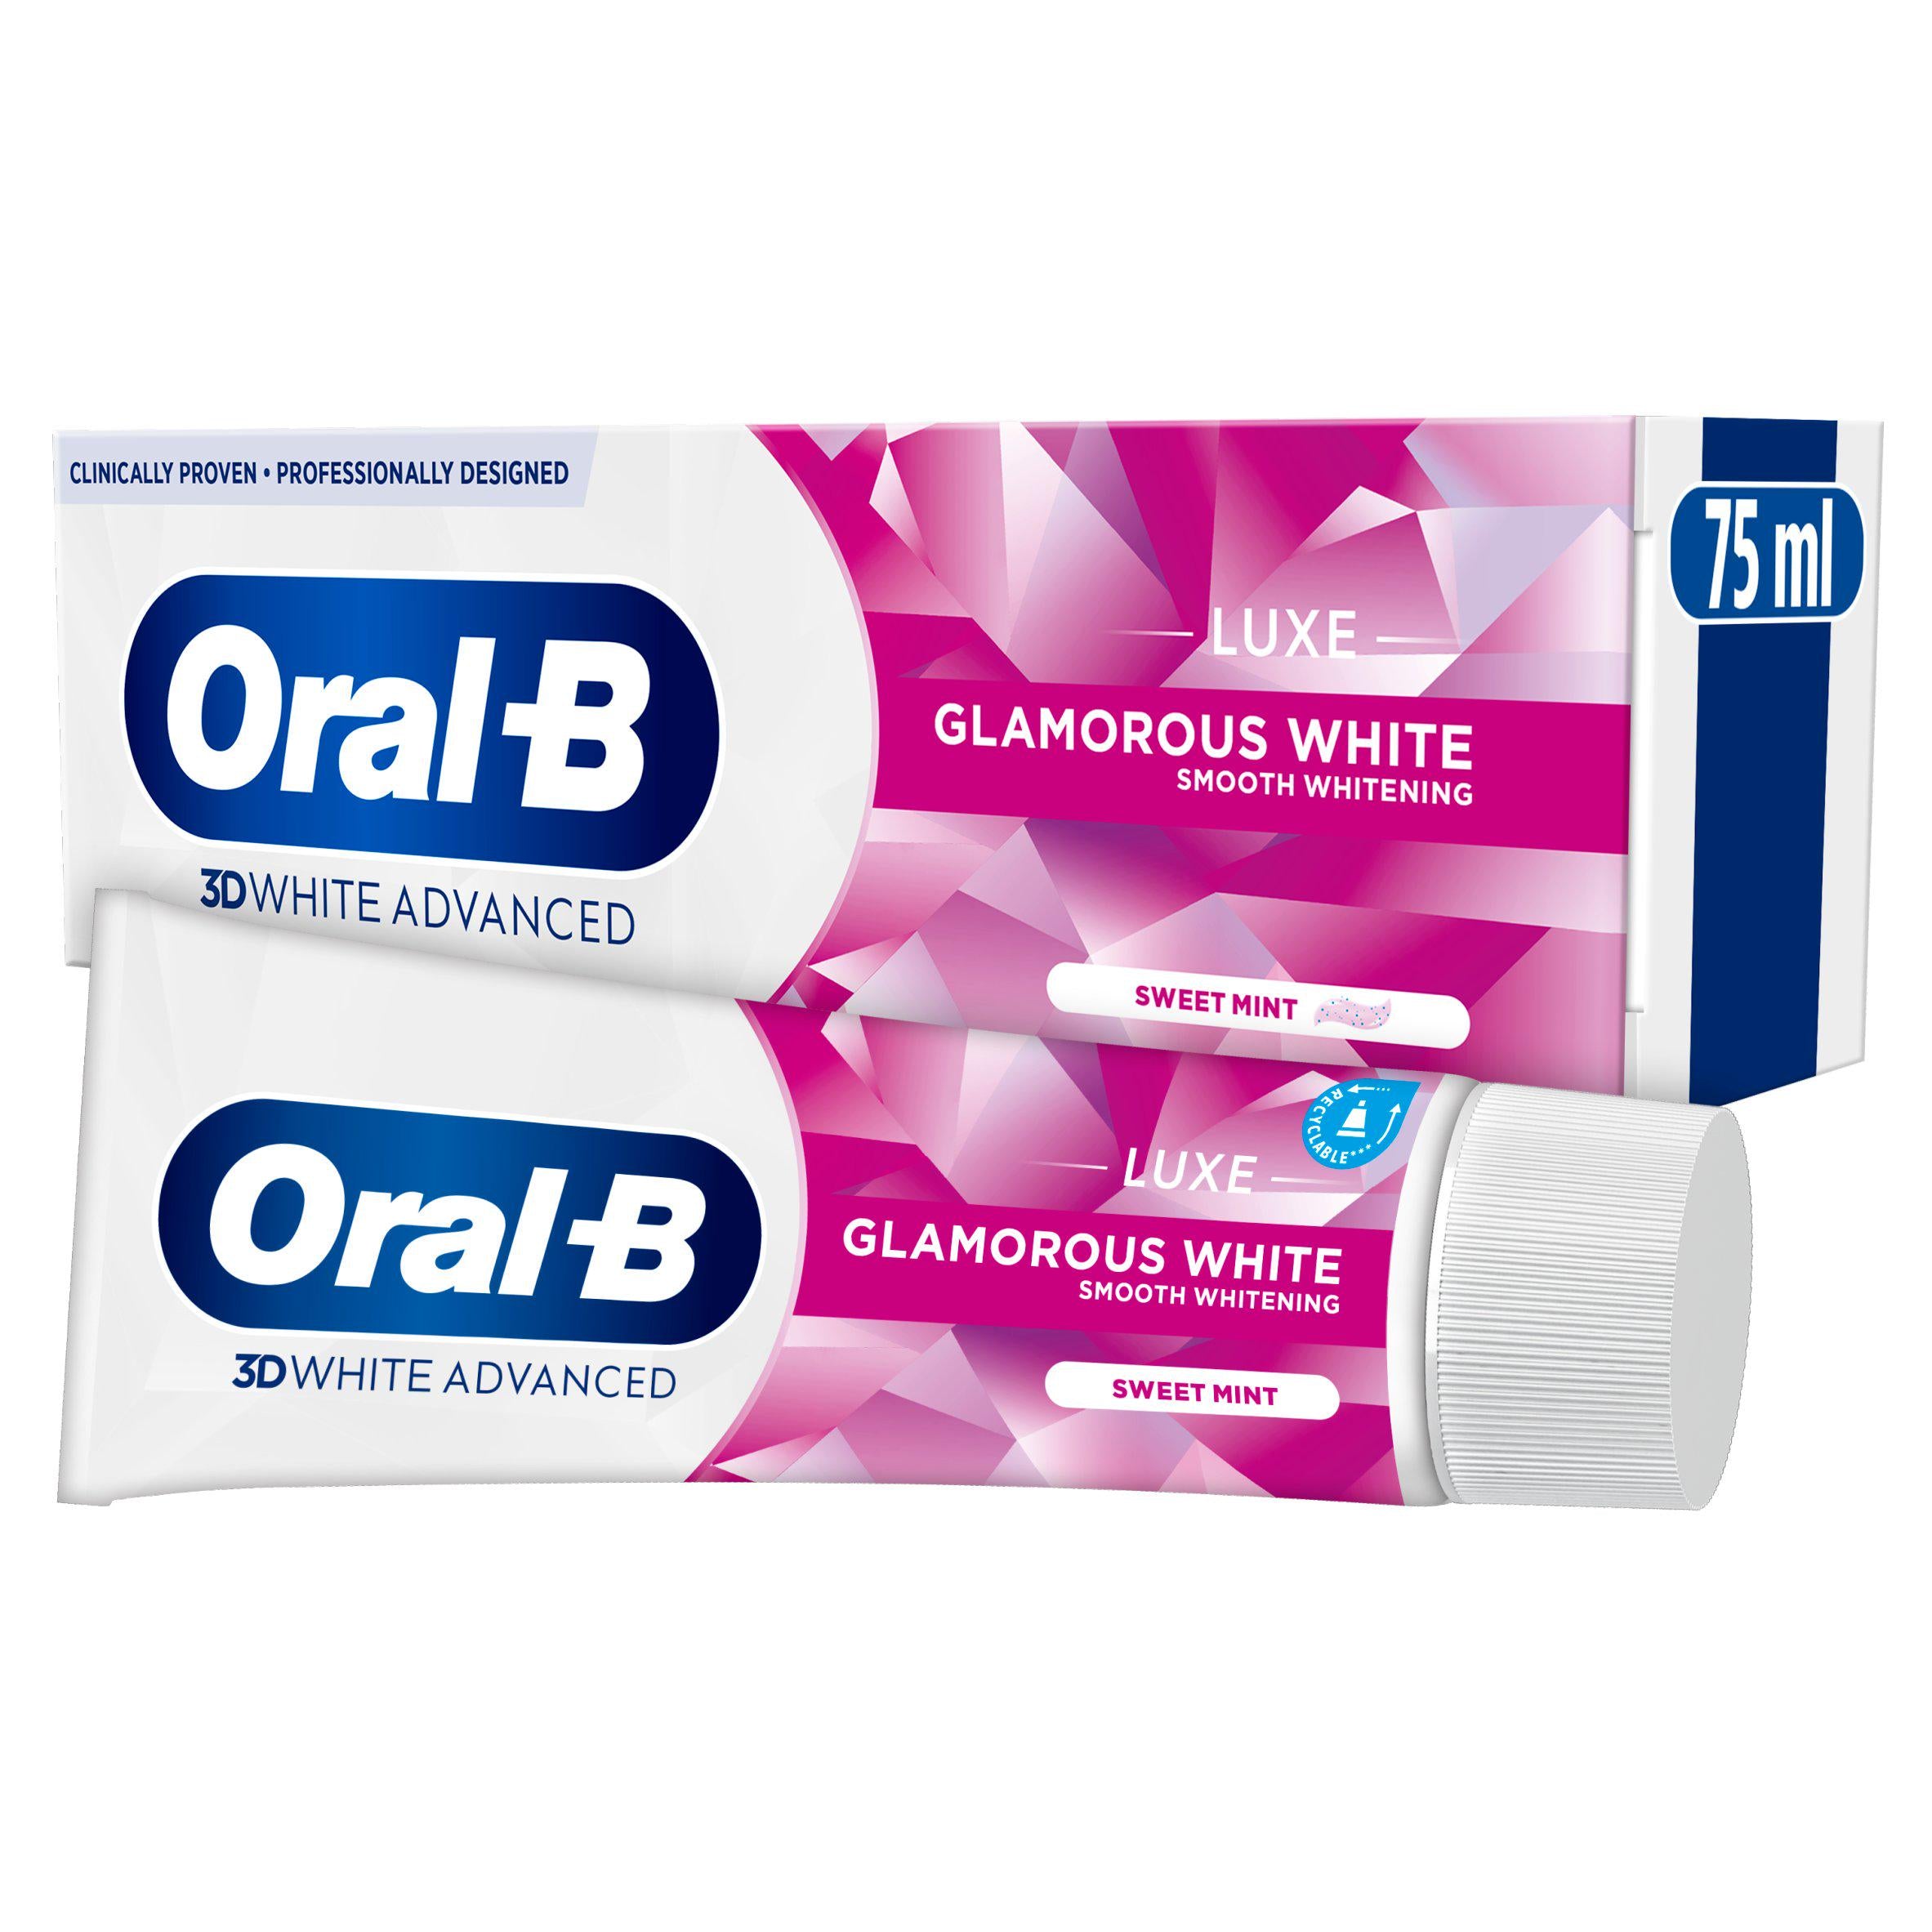 Oral-B 3D White Luxe Glamorous White Whitening Toothpaste 75ml toothpaste Sainsburys   